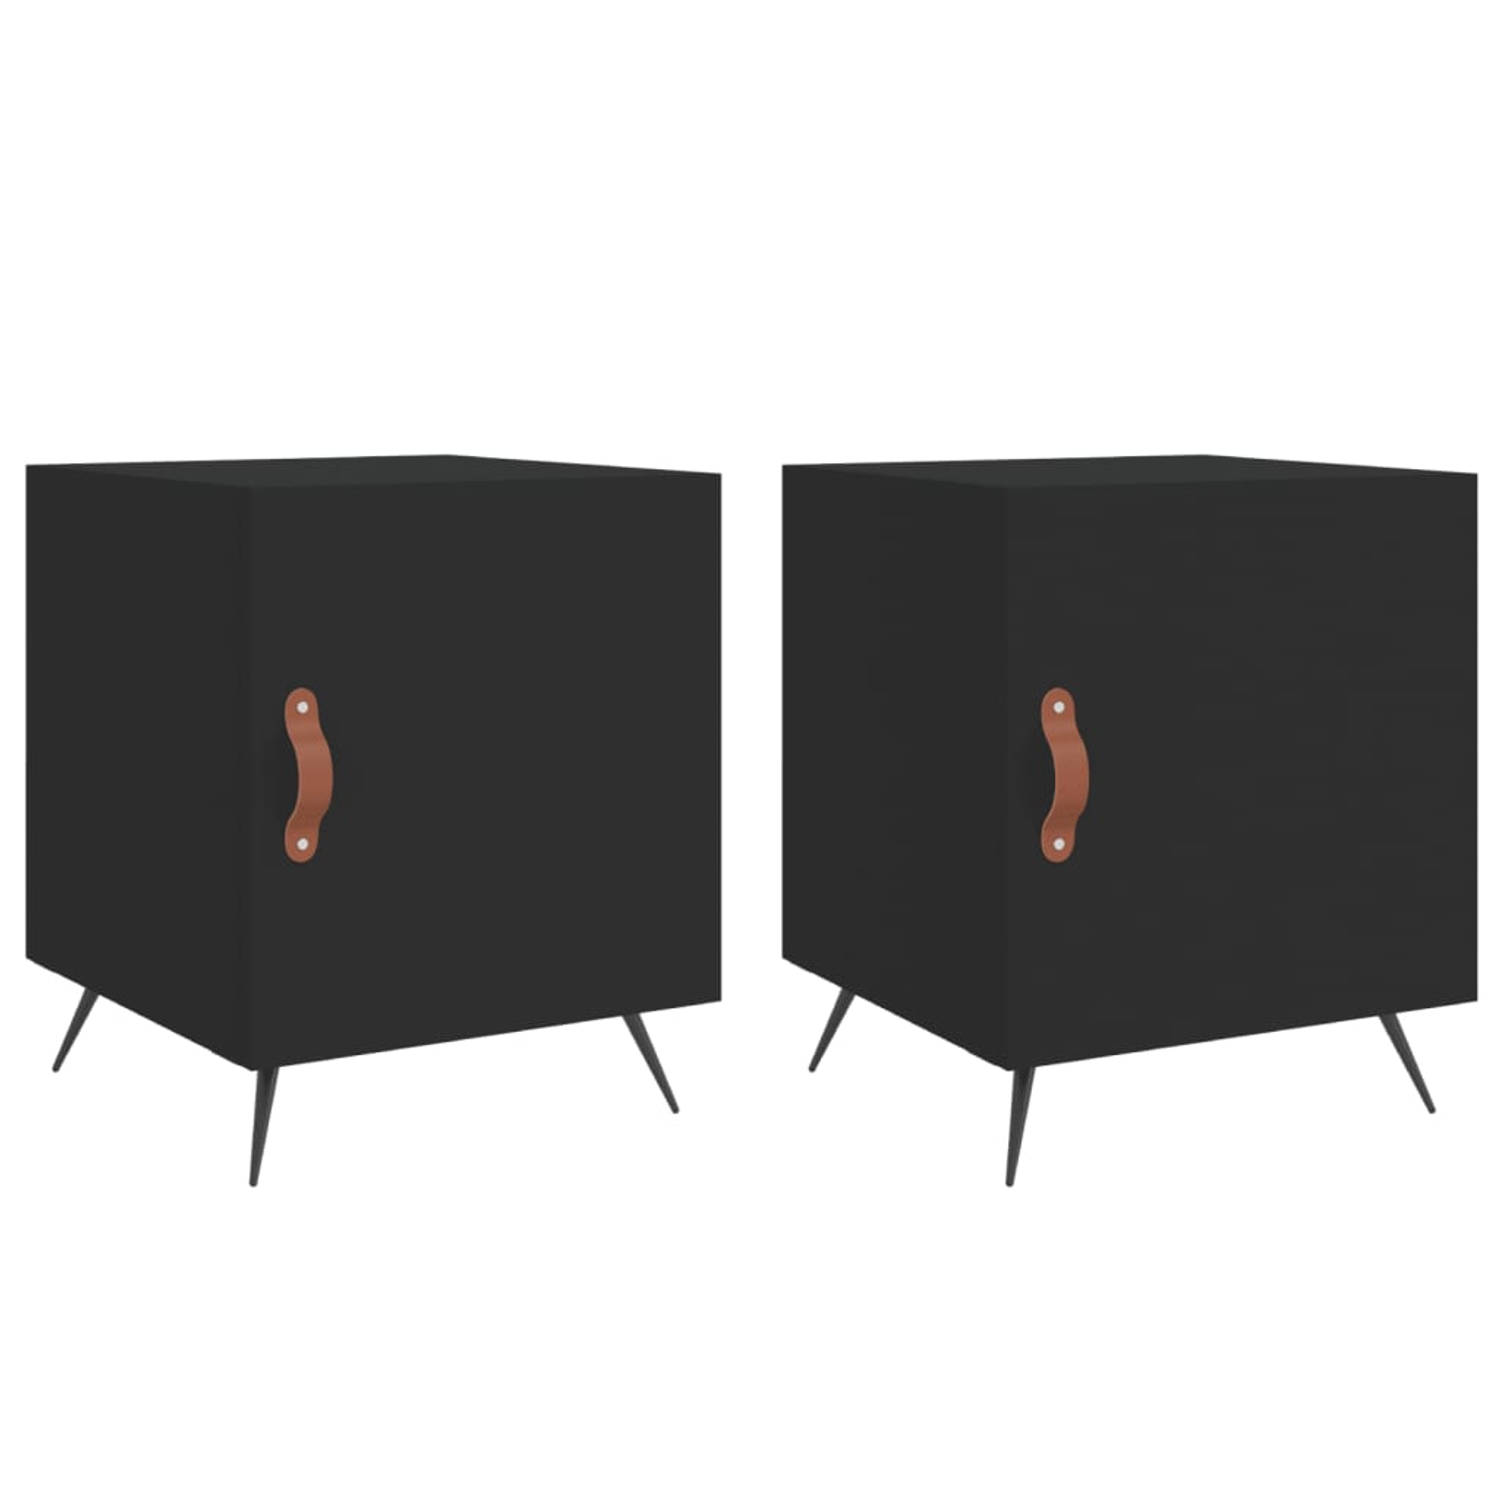 The Living Store Nachtkastjes - zwart - Set van 2 - 40x40x50cm - Duurzaam materiaal - Veel opbergruimte - Displayfunctie - Metalen voeten - Praktische deur - Montage vereist